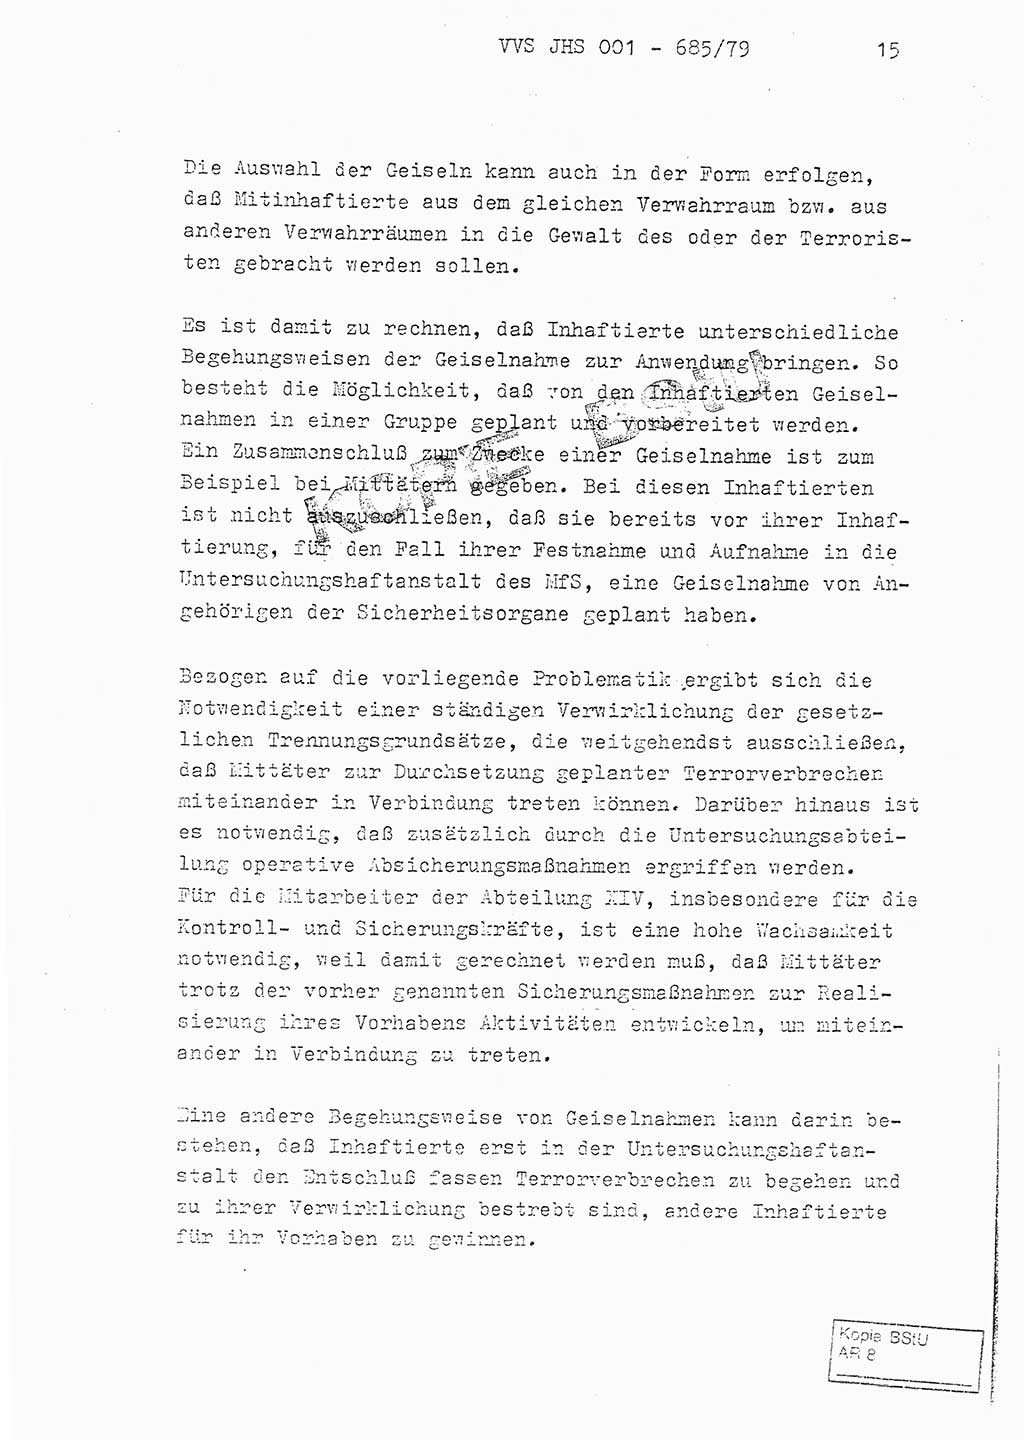 Fachschulabschlußarbeit Oberleutnant Helmut Peckruhn (BV Bln. Abt. ⅩⅣ), Ministerium für Staatssicherheit (MfS) [Deutsche Demokratische Republik (DDR)], Juristische Hochschule (JHS), Vertrauliche Verschlußsache (VVS) 001-685/79, Potsdam 1979, Seite 15 (FS-Abschl.-Arb. MfS DDR JHS VVS 001-685/79 1979, S. 15)